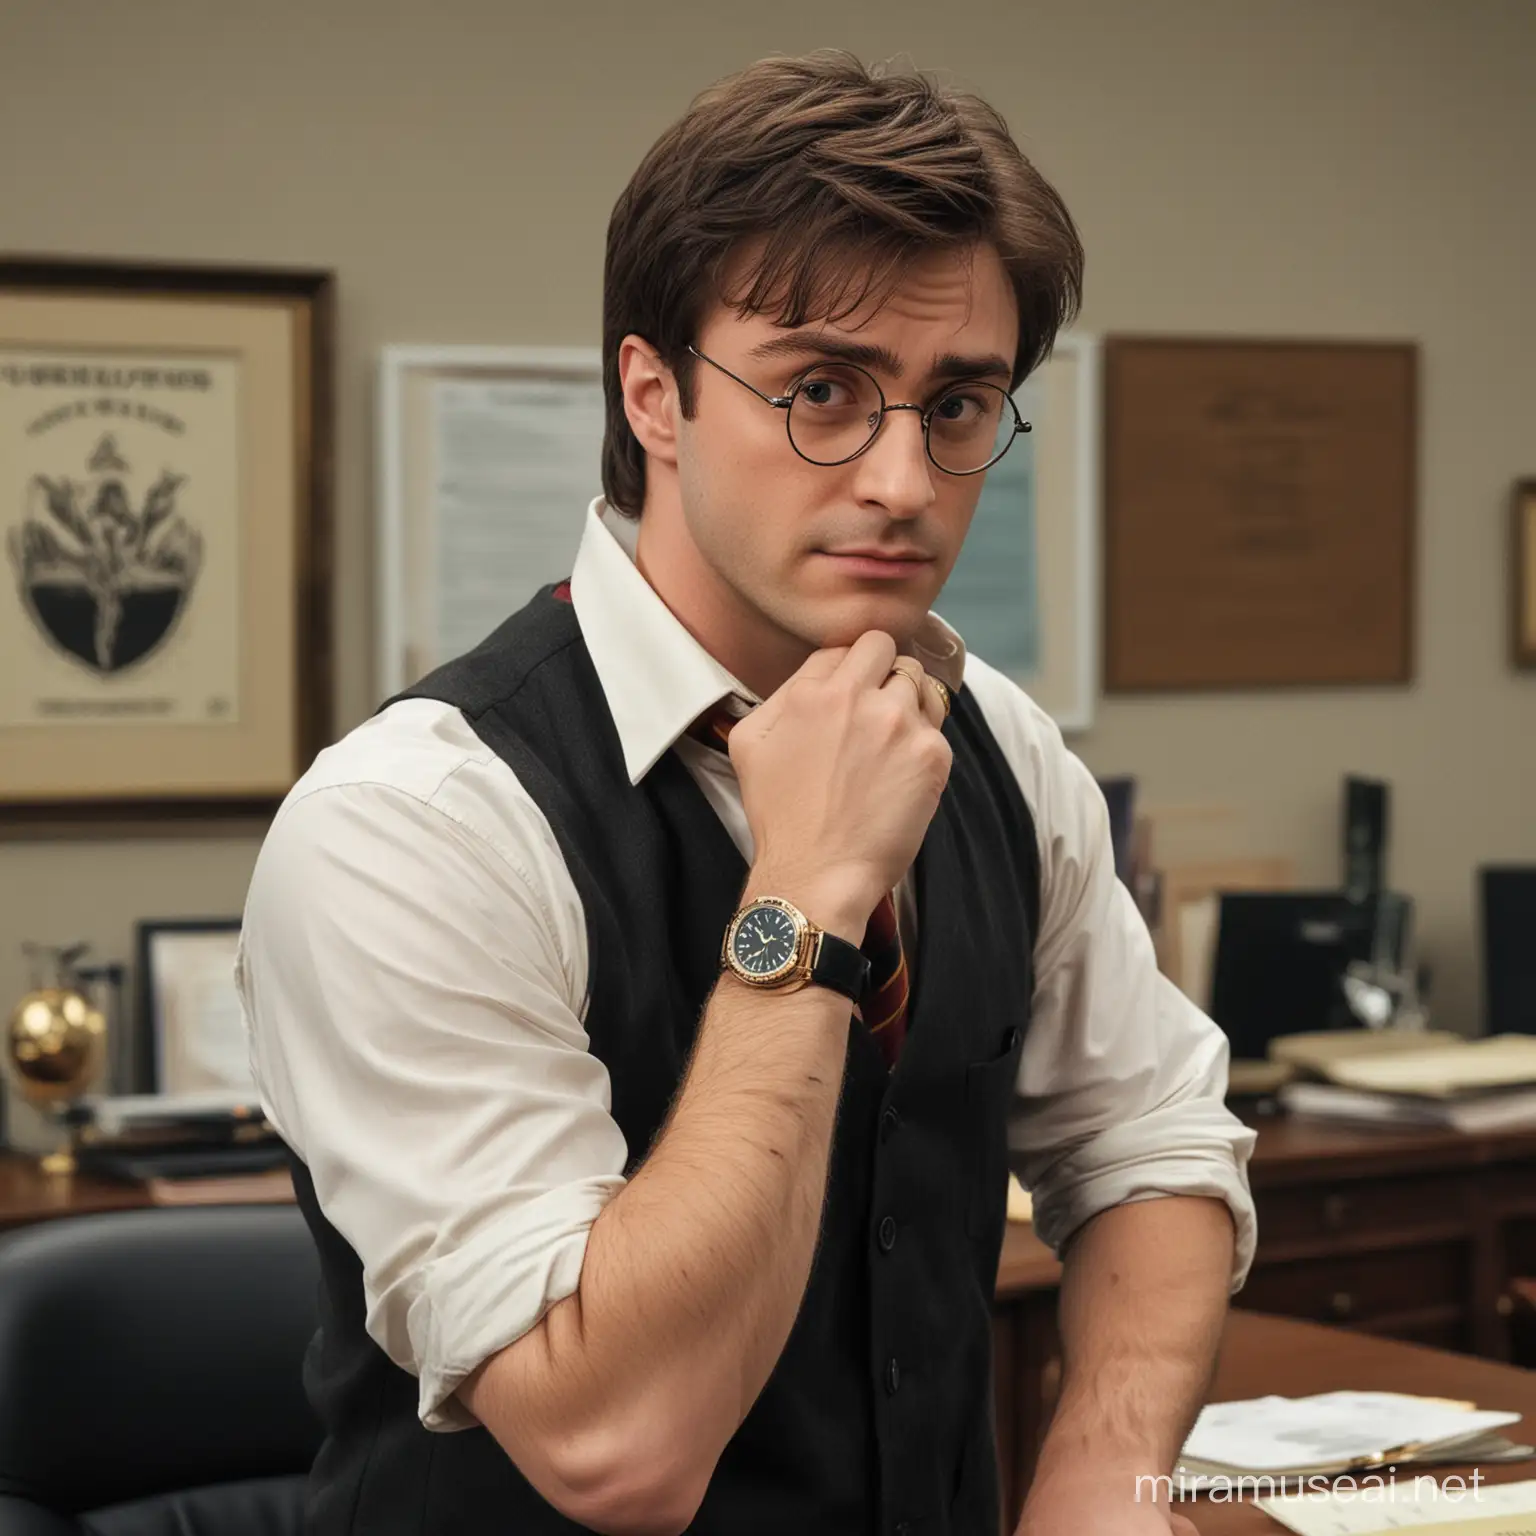 Harry Potter hält die Hand am Kinn und hat eine Rolex am Arm, er steht in einem Büro